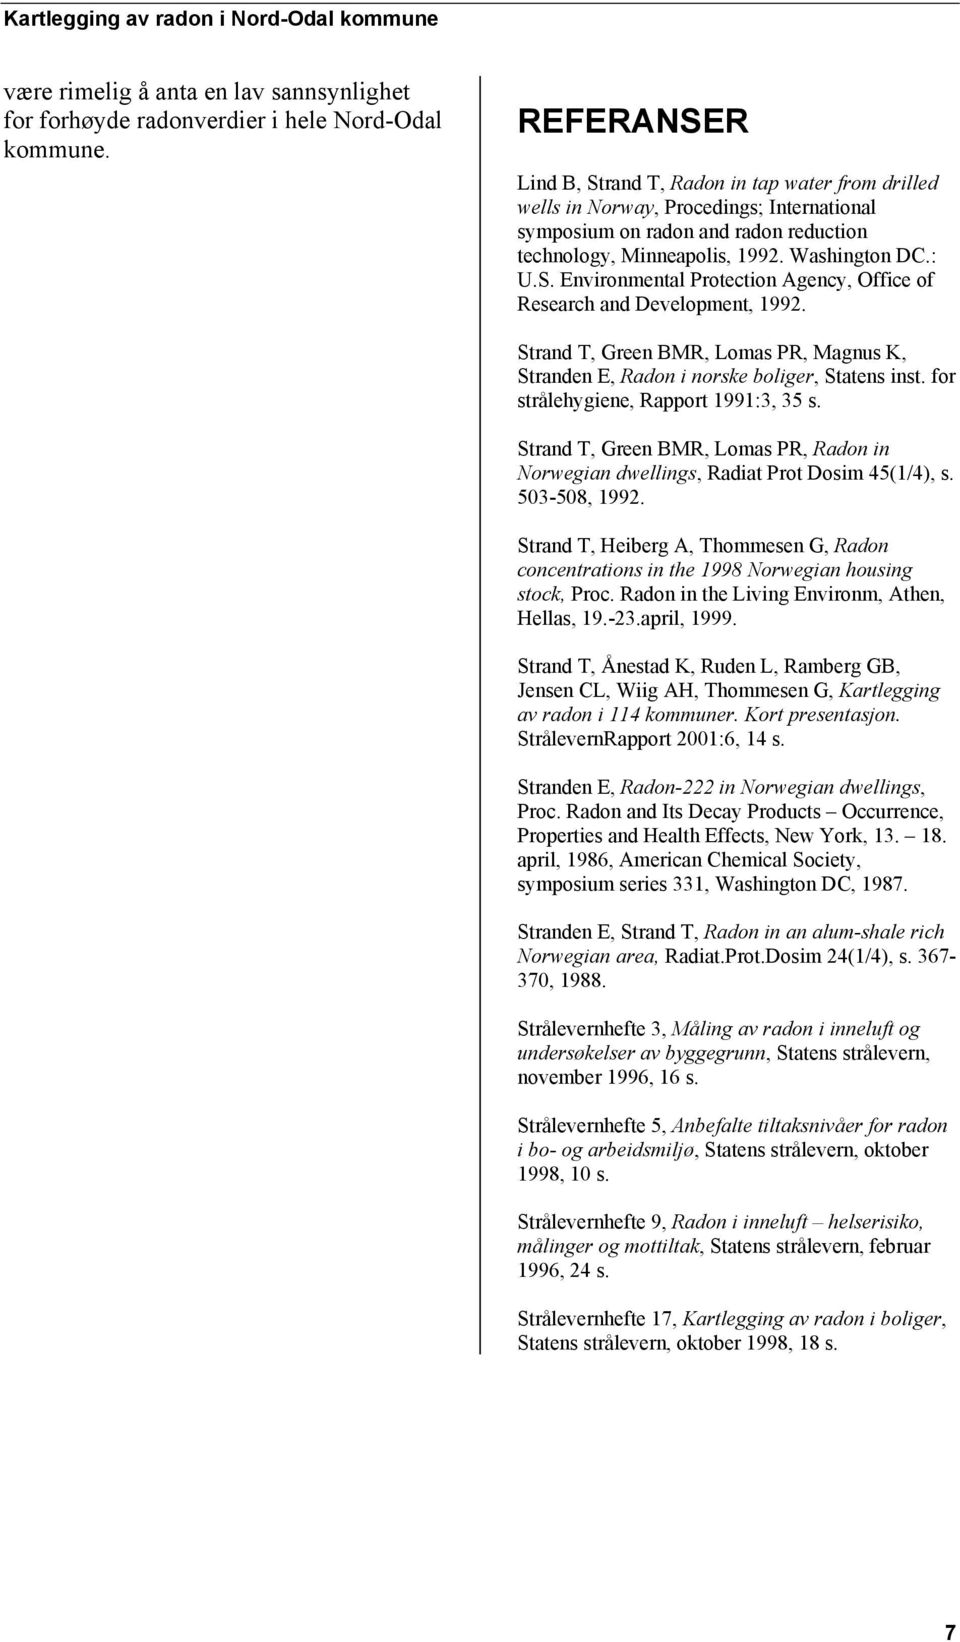 Strand T, Green BMR, Lomas PR, Magnus K, Stranden E, Radon i norske boliger, Statens inst. for strålehygiene, Rapport 1991:3, 35 s.